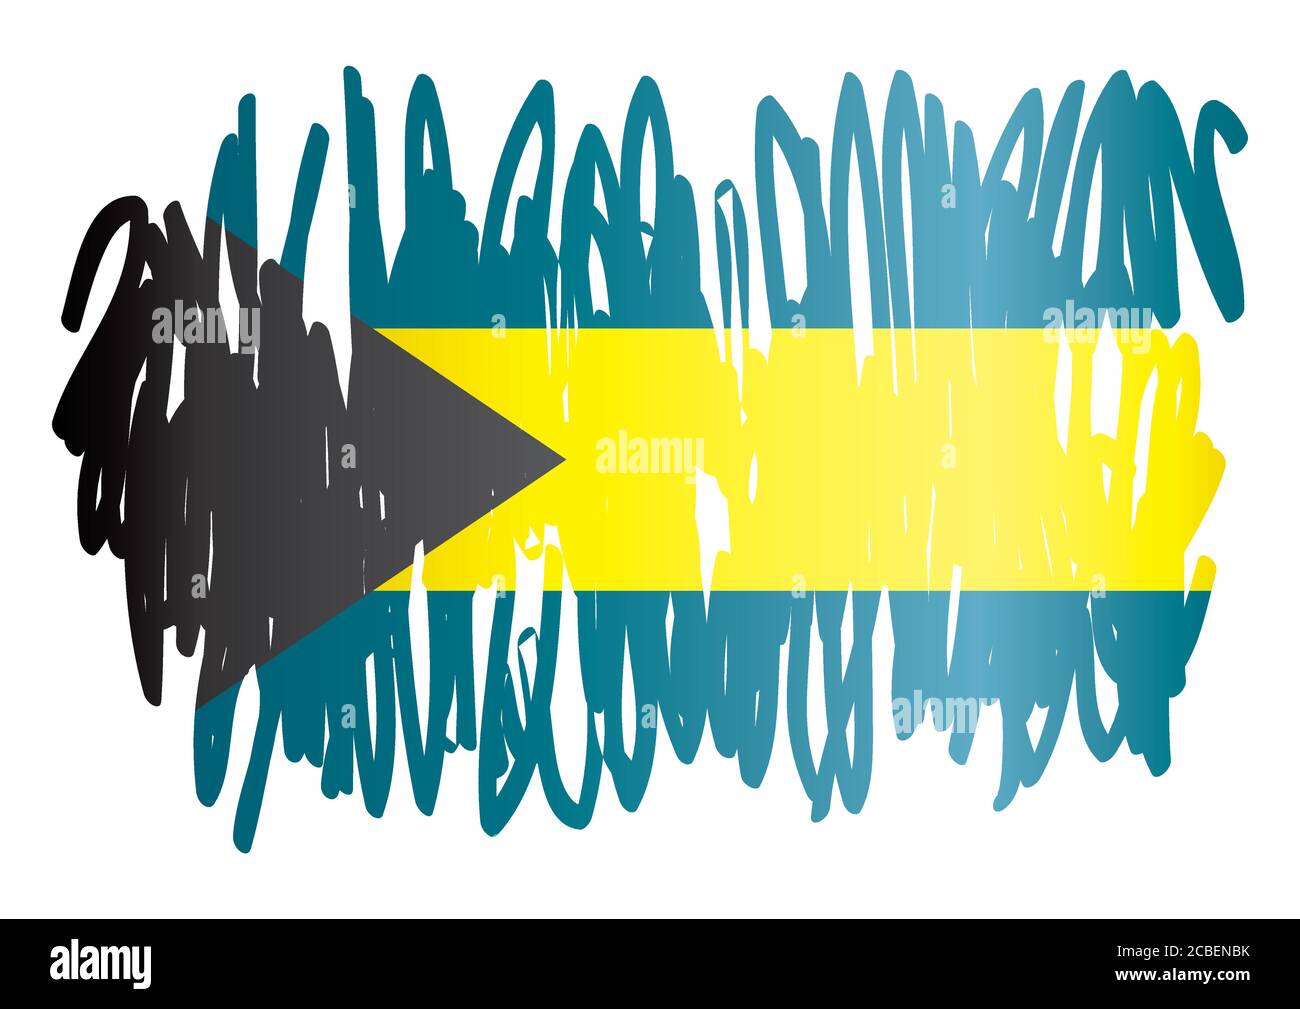 Drapeau des Bahamas, Commonwealth des Bahamas. Modèle pour la conception de prix, un document officiel avec le drapeau des Bahamas. Illustration de Vecteur